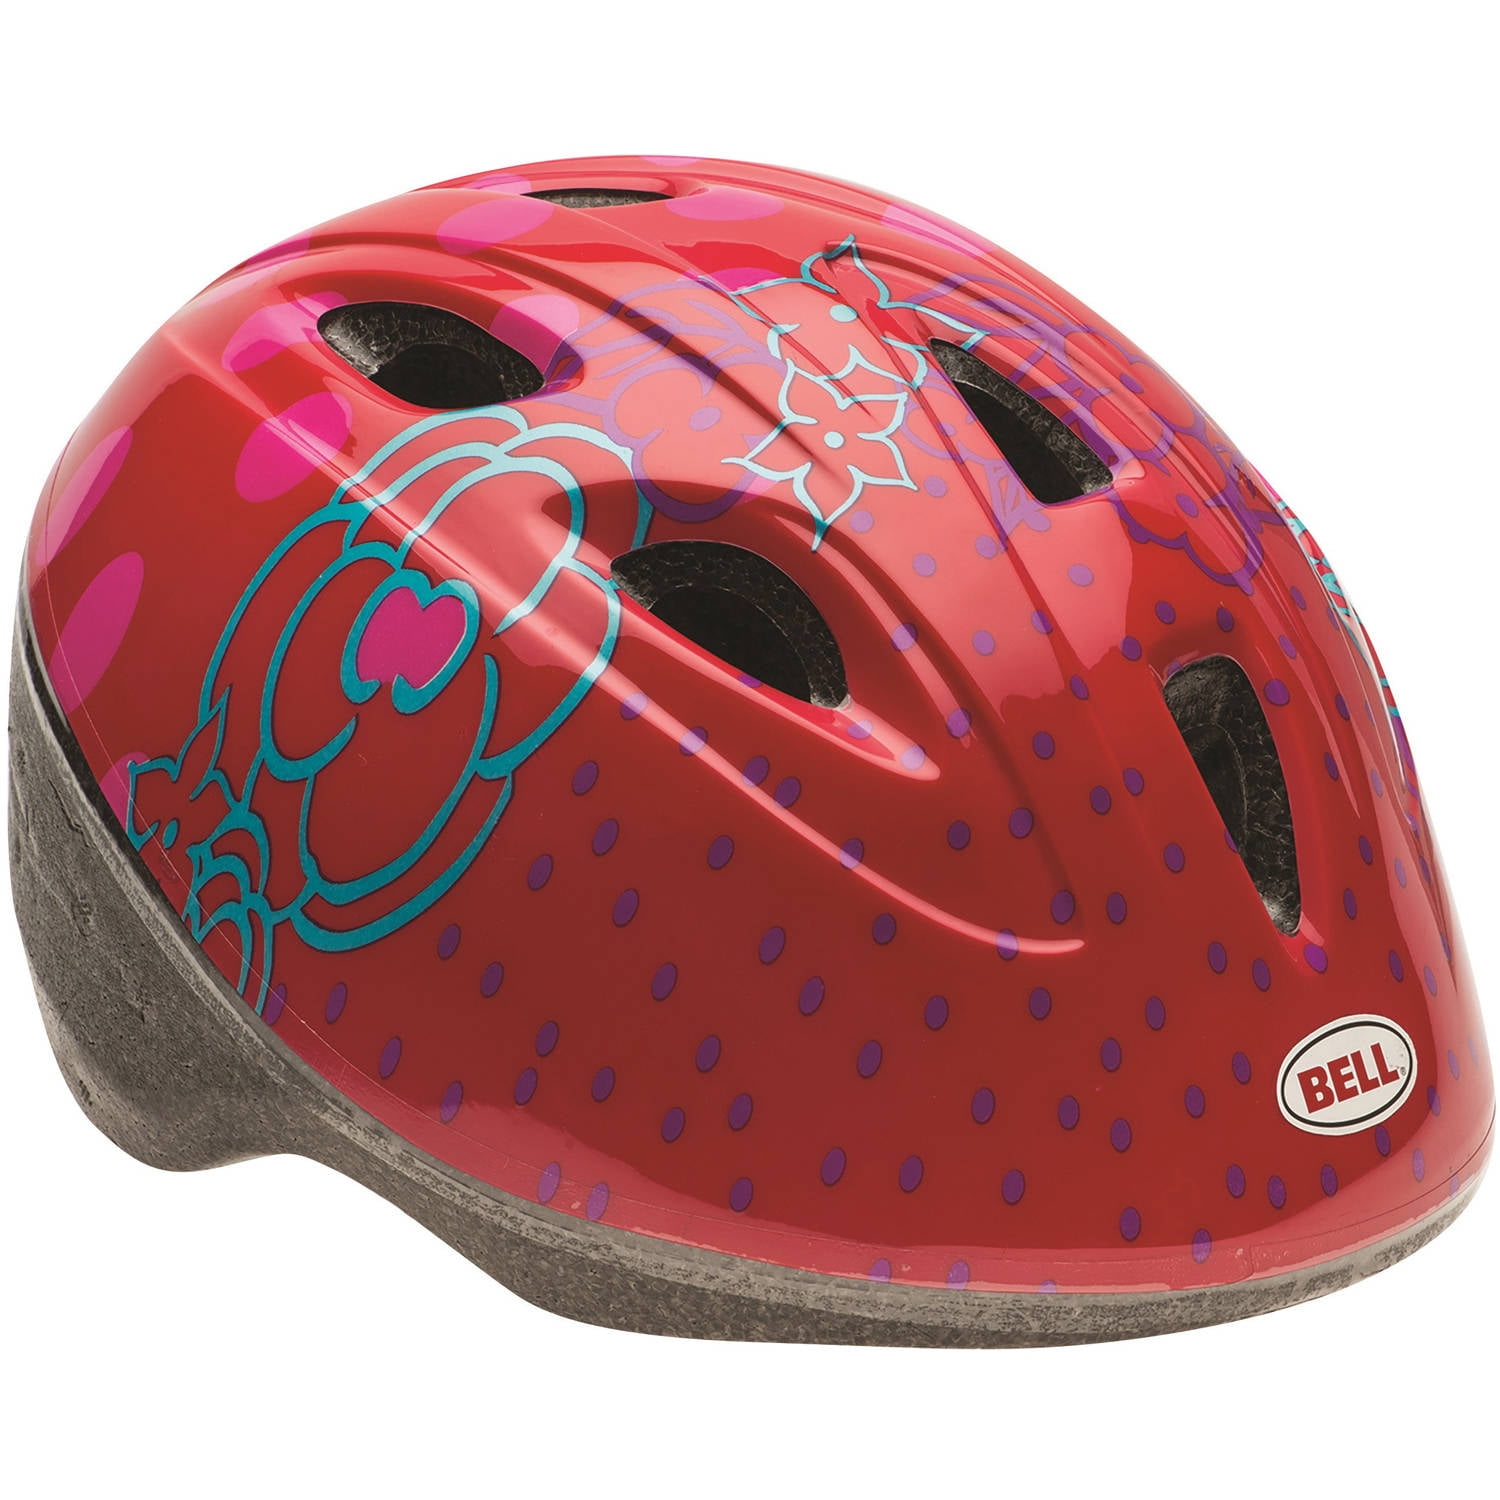 Raleigh Lil Terra Mermaid Childs Kids Girls Pink Cycle Helmet 48-54cm 